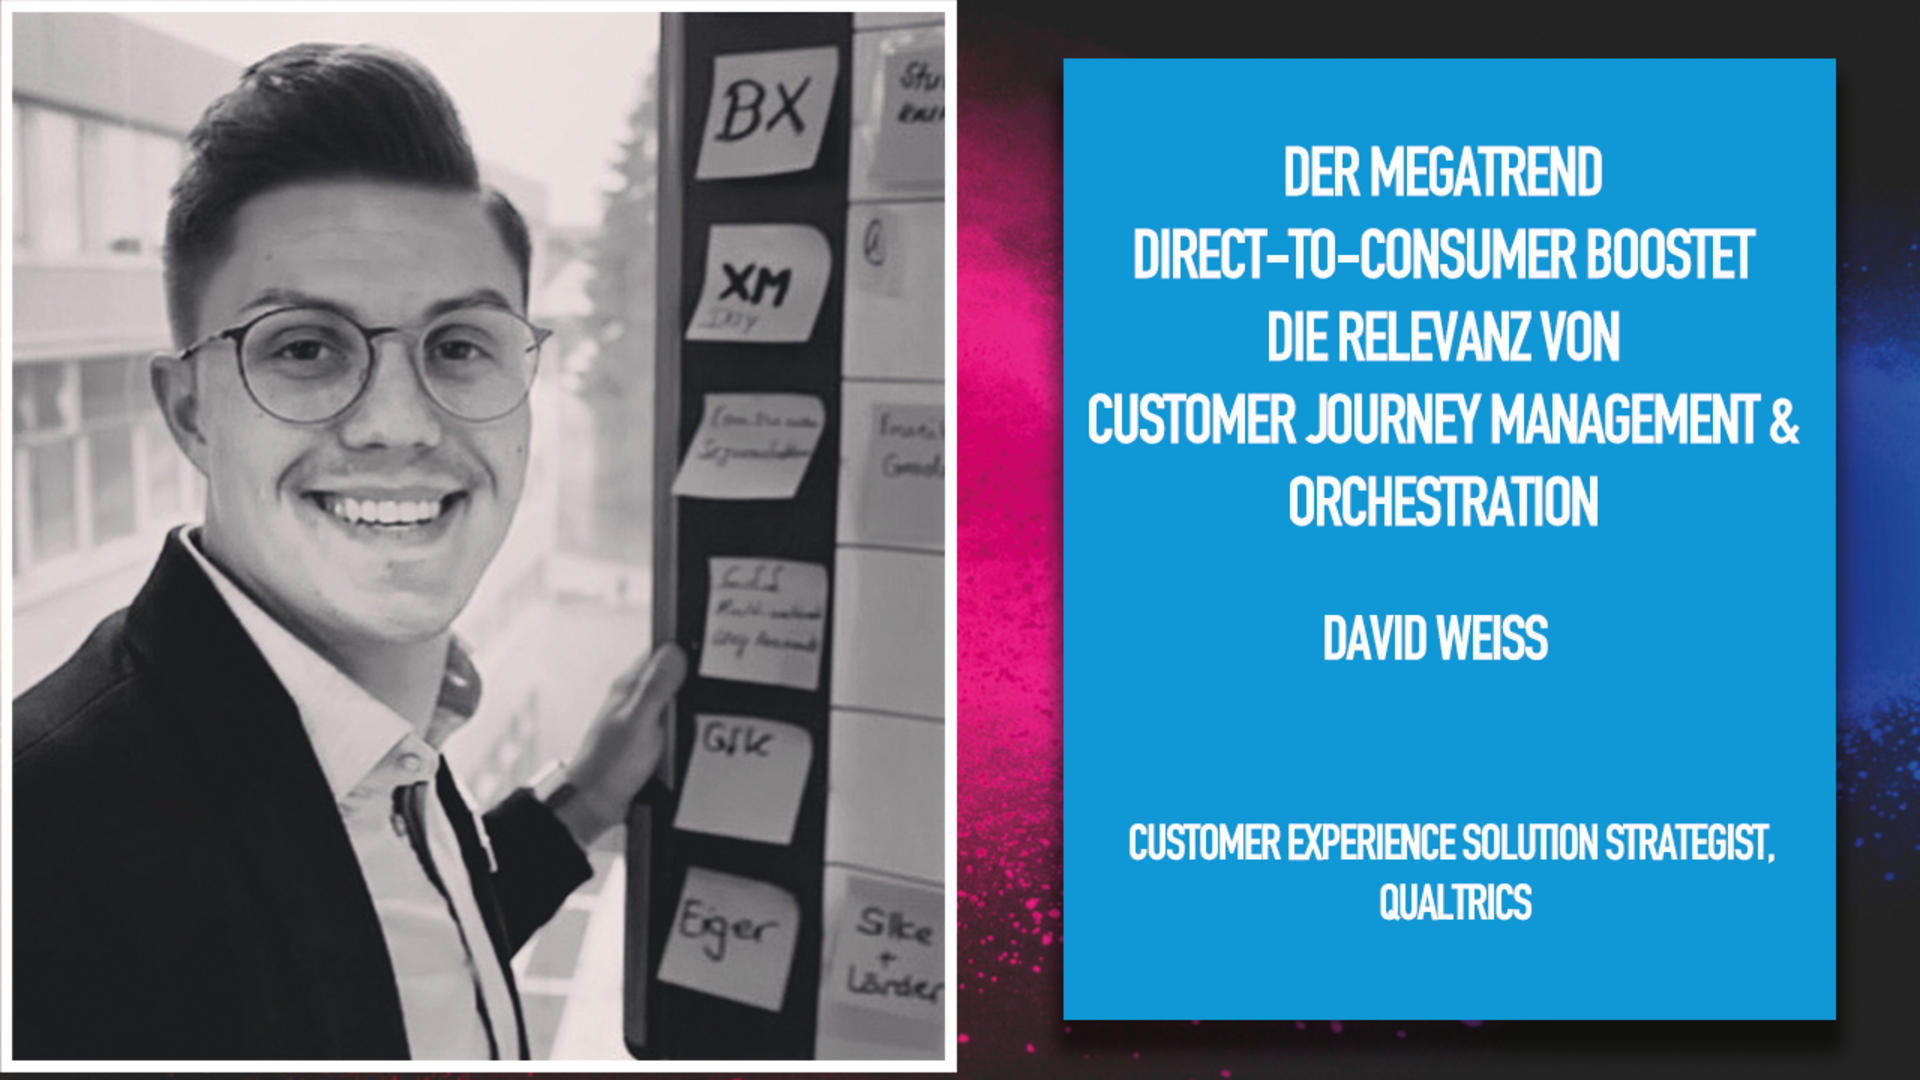 Der Megatrend Direct-to-Consumer boostet die Relevanz von Customer Journey Management & Orchestration 